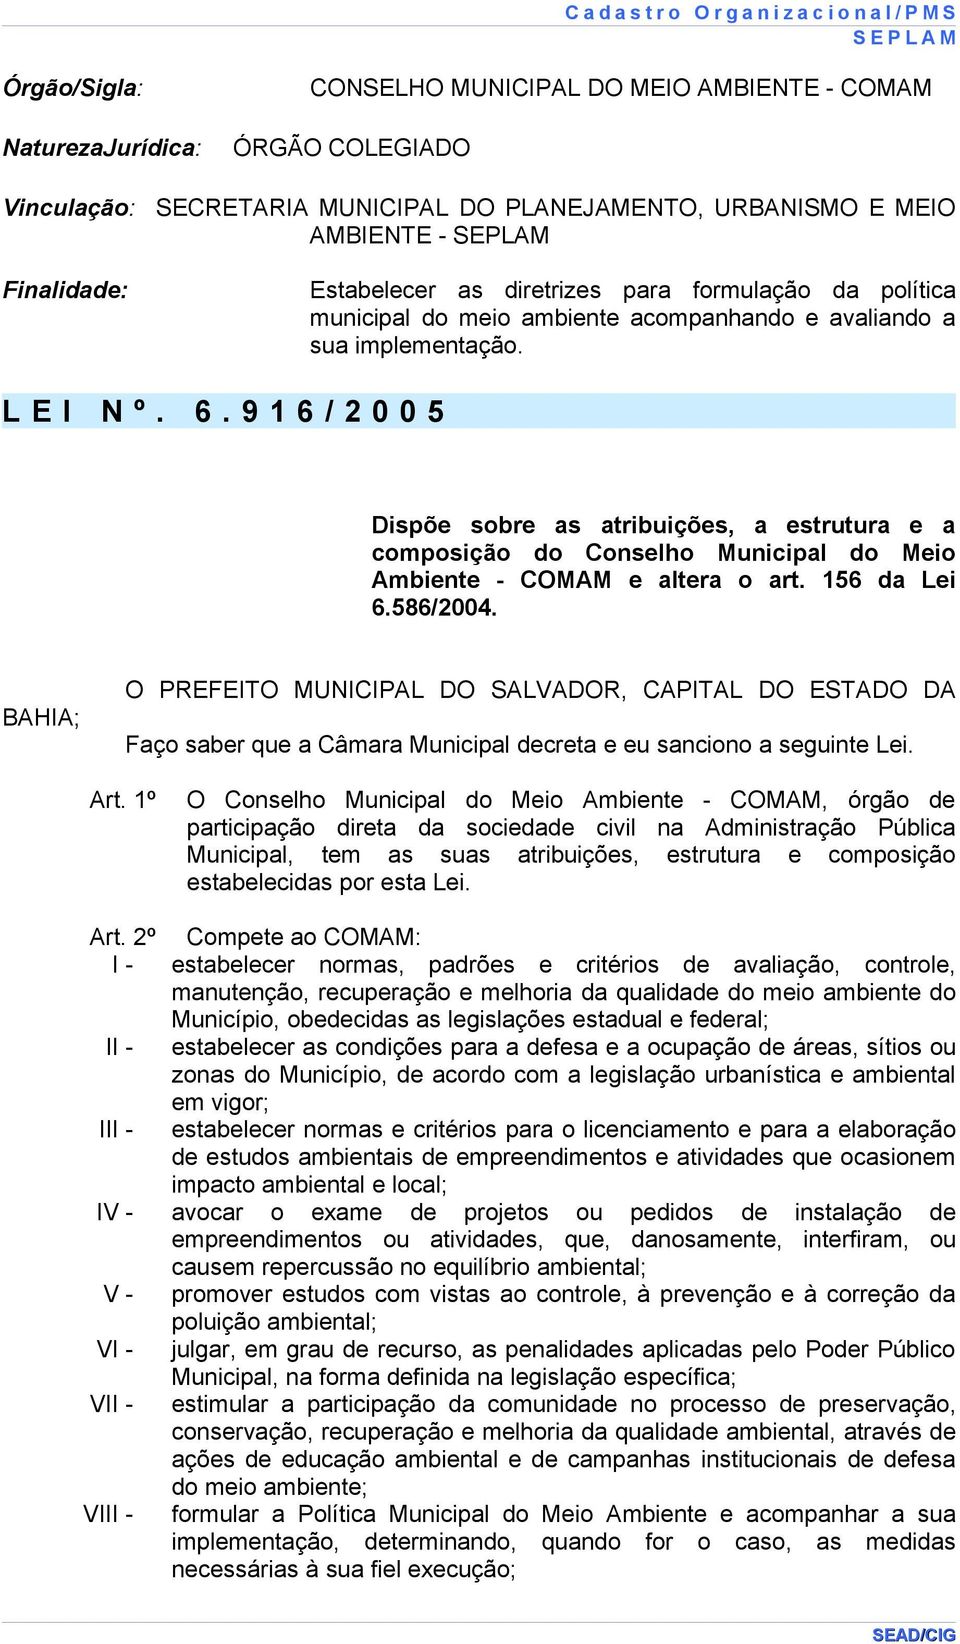 9 1 6 / 2 0 0 5 Dispõe sobre as atribuições, a estrutura e a composição do Conselho Municipal do Meio Ambiente - COMAM e altera o art. 156 da Lei 6.586/2004.